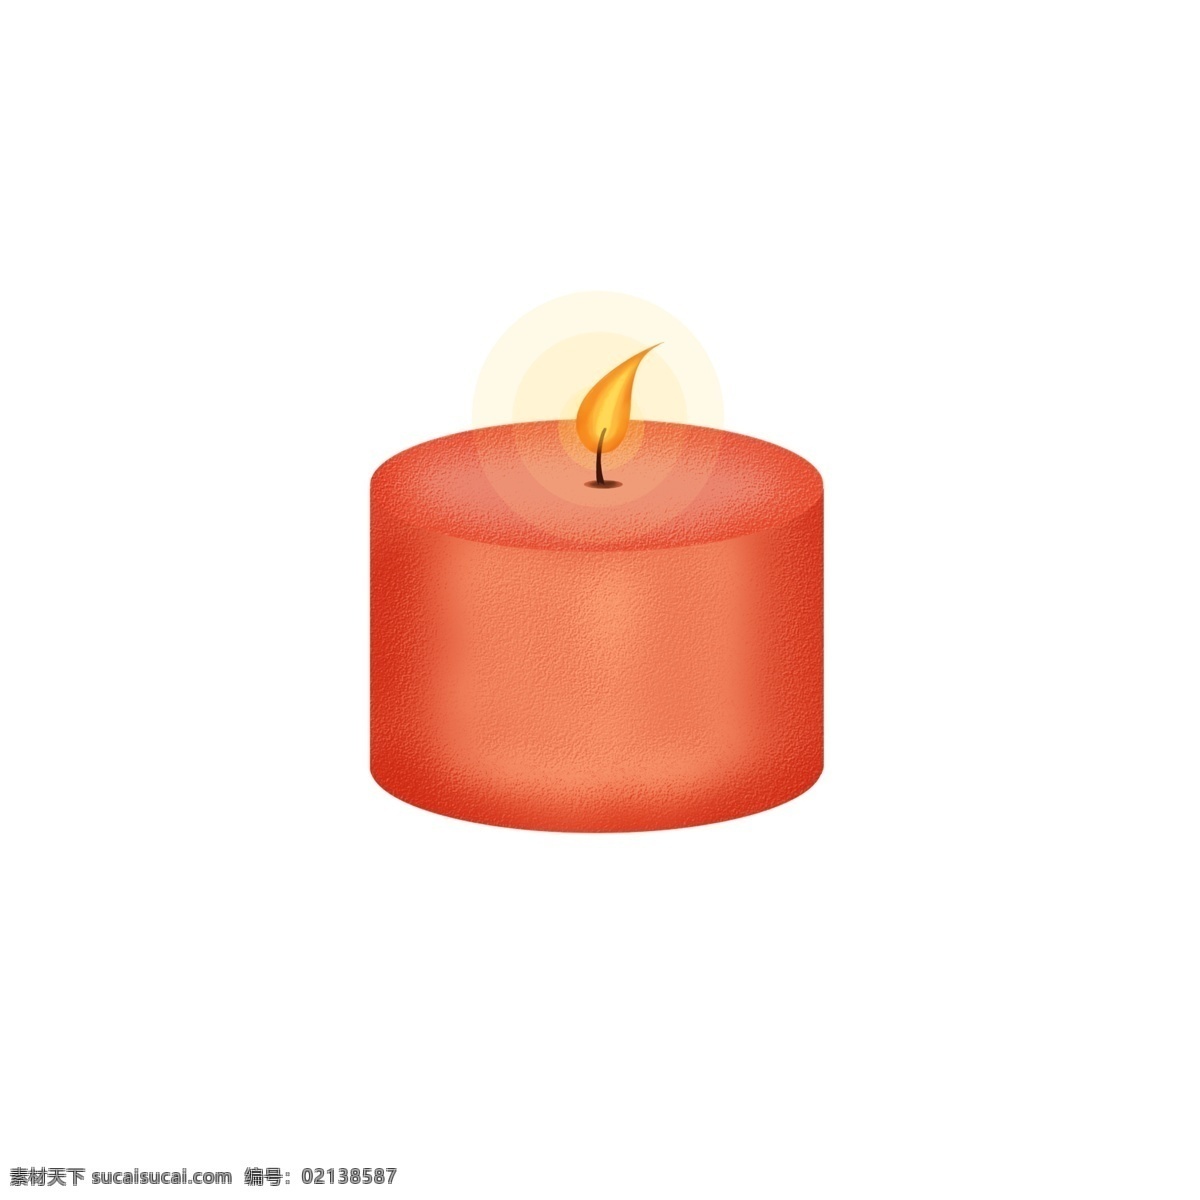 祈祷 蜡烛 心愿 红色 烛光 平安 祈愿 免 抠